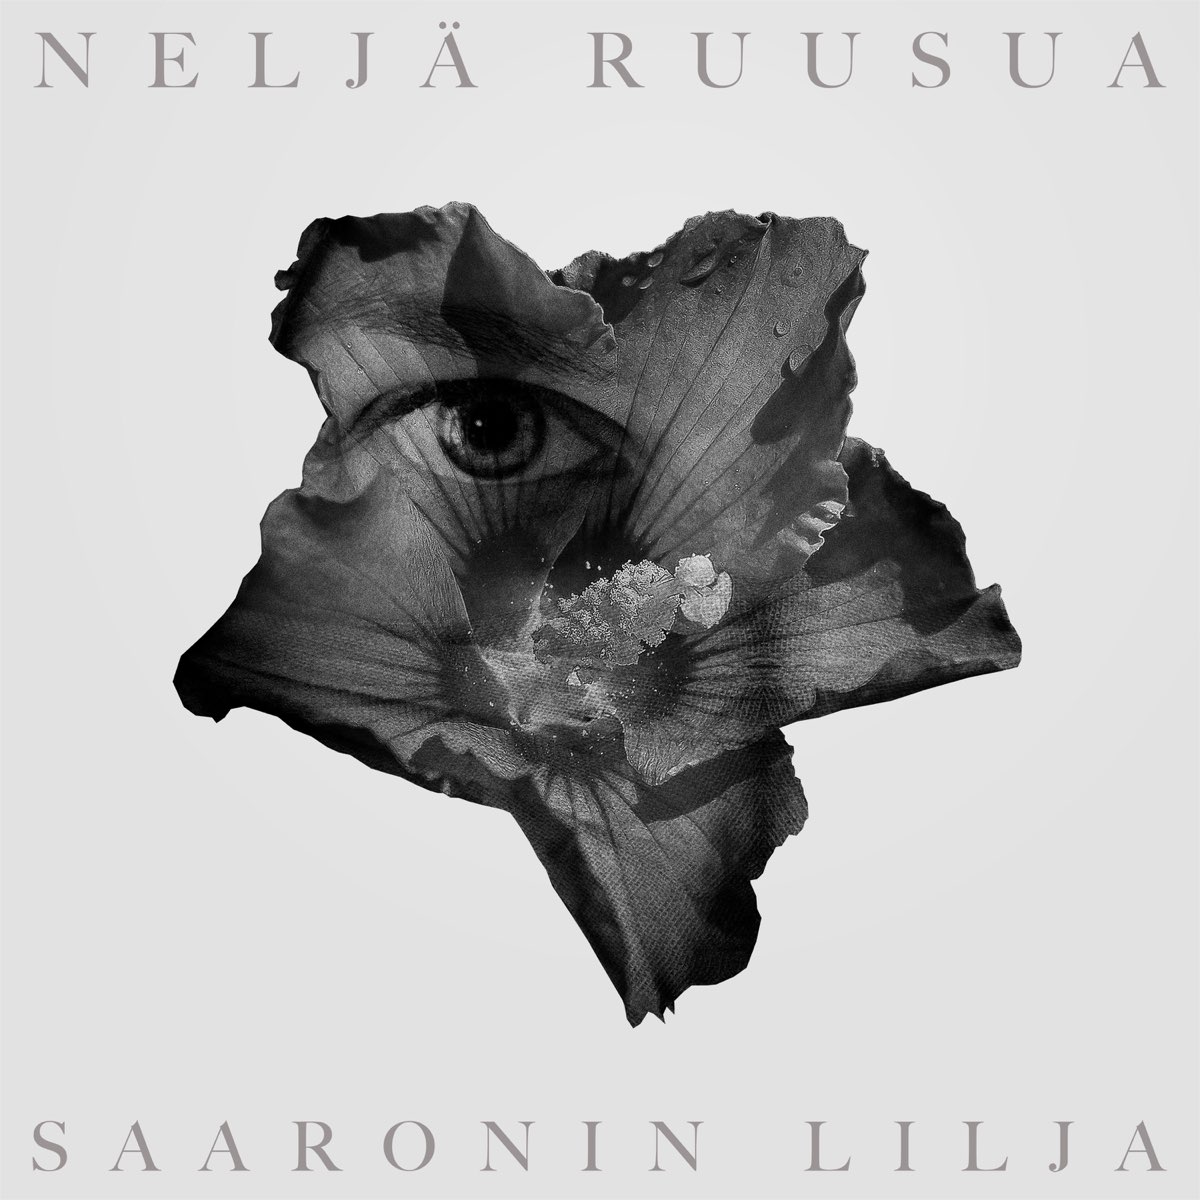 Saaronin lilja - Single by Neljä Ruusua on Apple Music